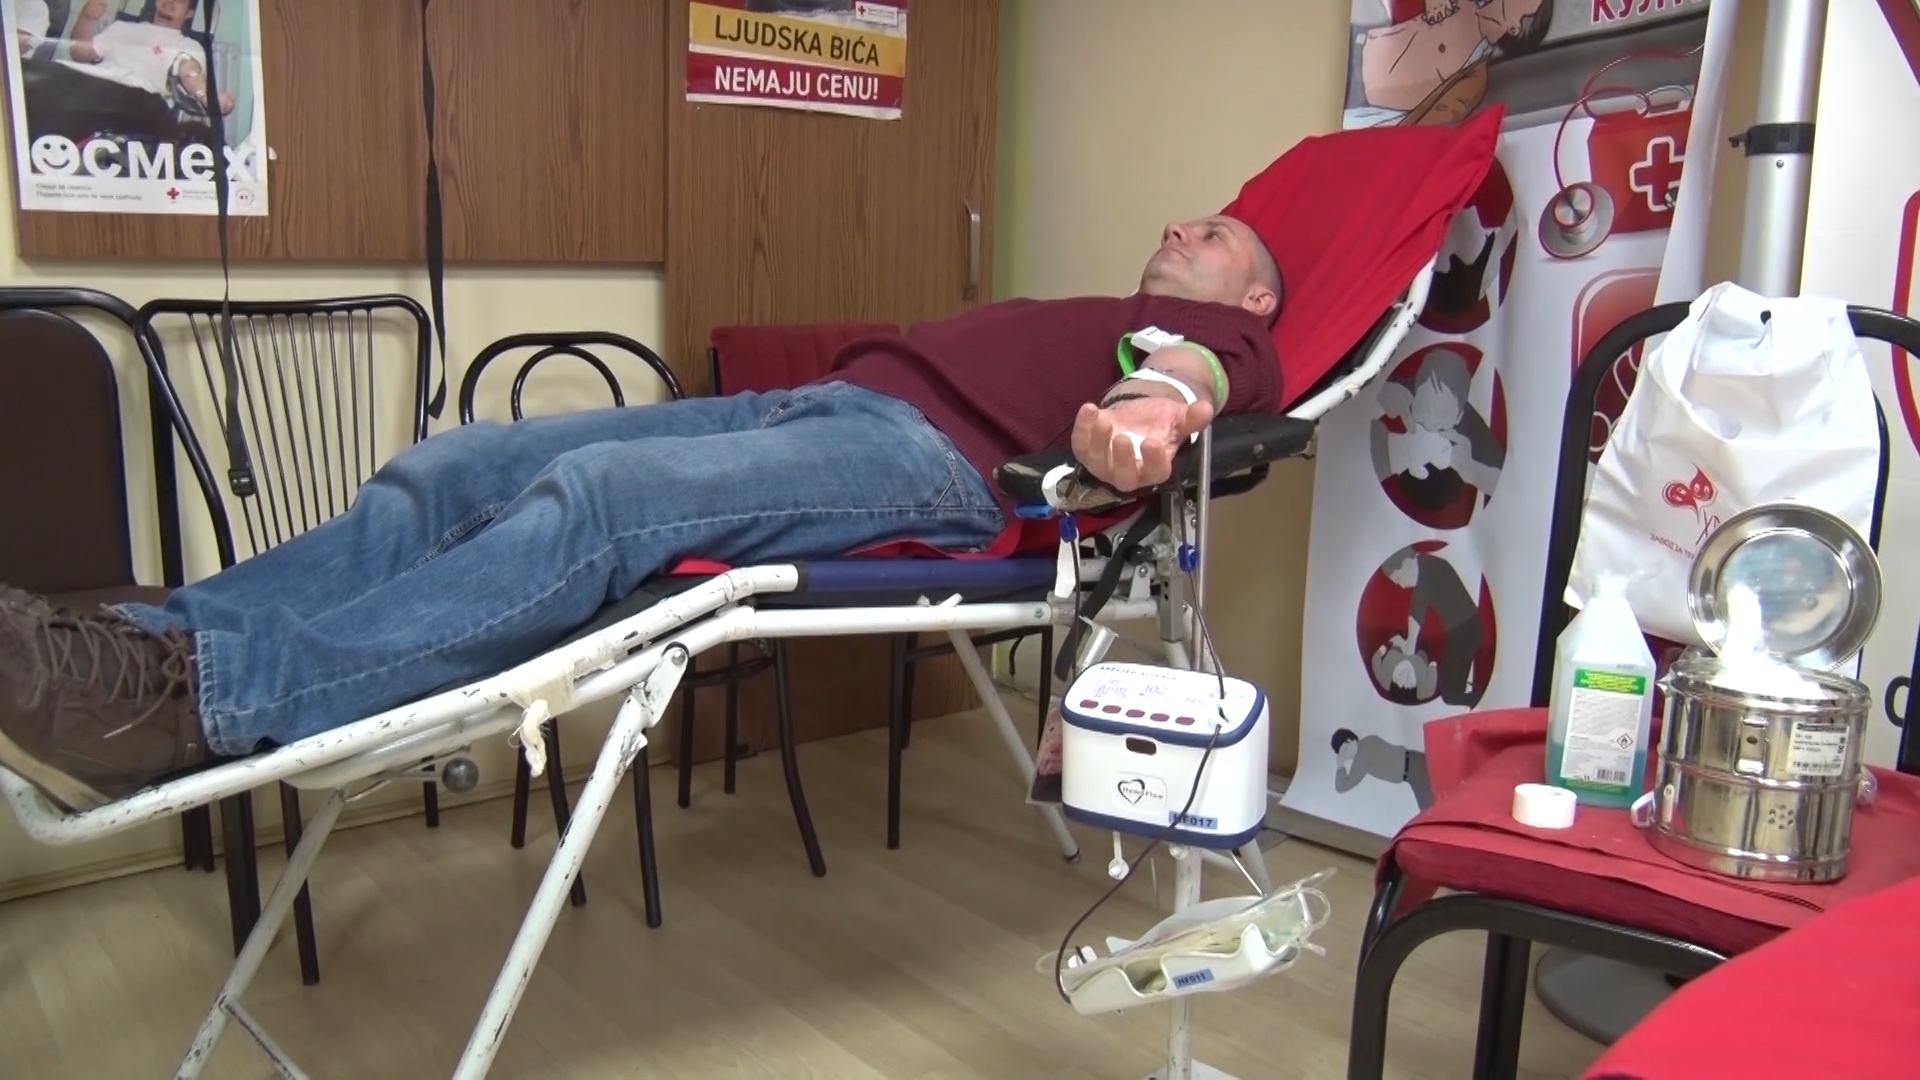 Аkcija dobrovoljnog davanja krvi u paraćinskom u Crvenom krstu